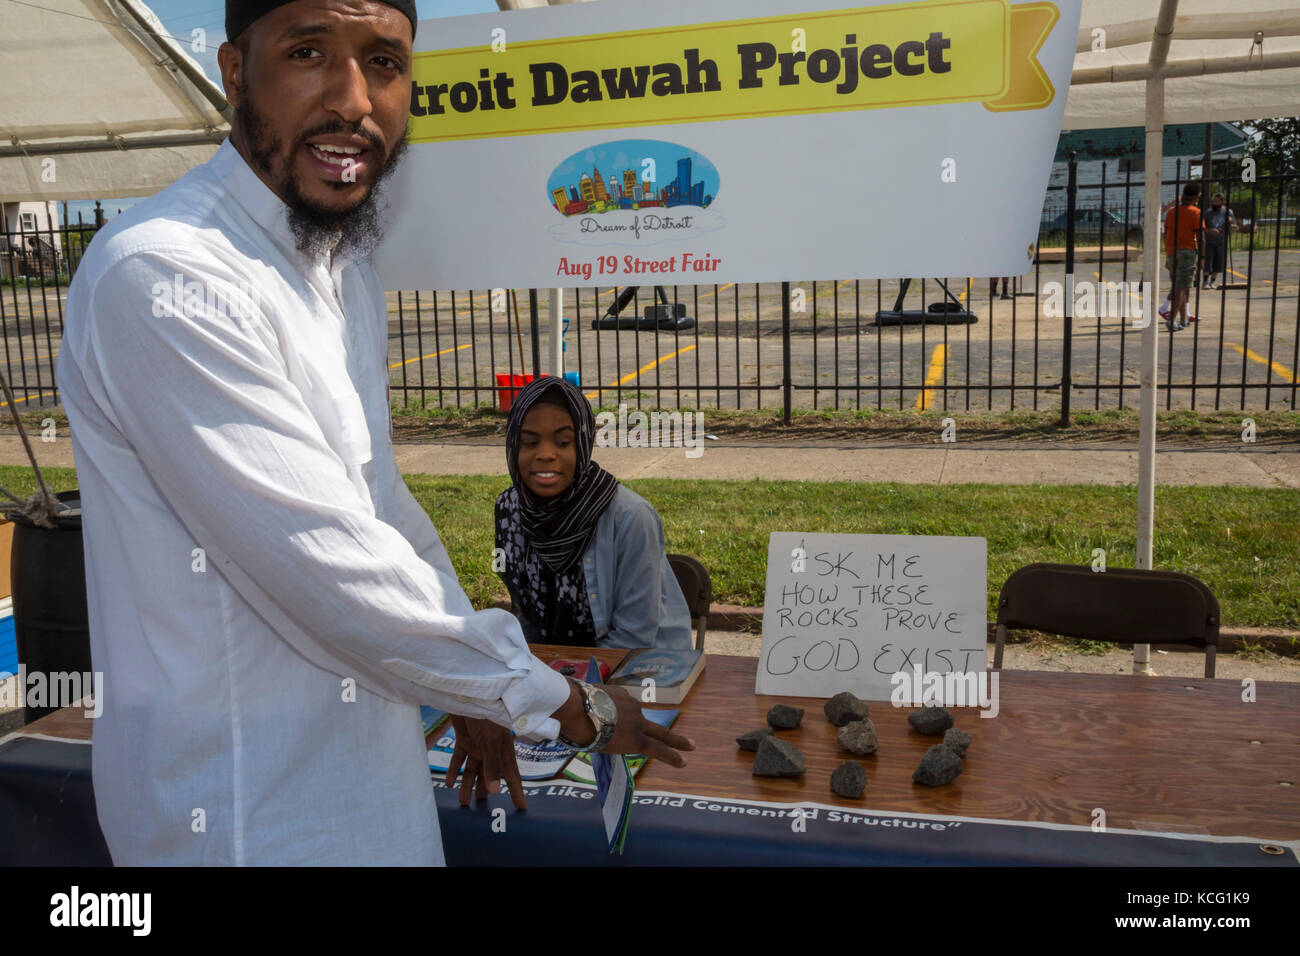 Detroit, Michigan - ein Mann bespricht die Religion mit der Traum von Detroit Street Fair. Er ist mit dem Projekt verbundenen Dawah, eine gemeinnützige islamische Kabinett Stockfoto